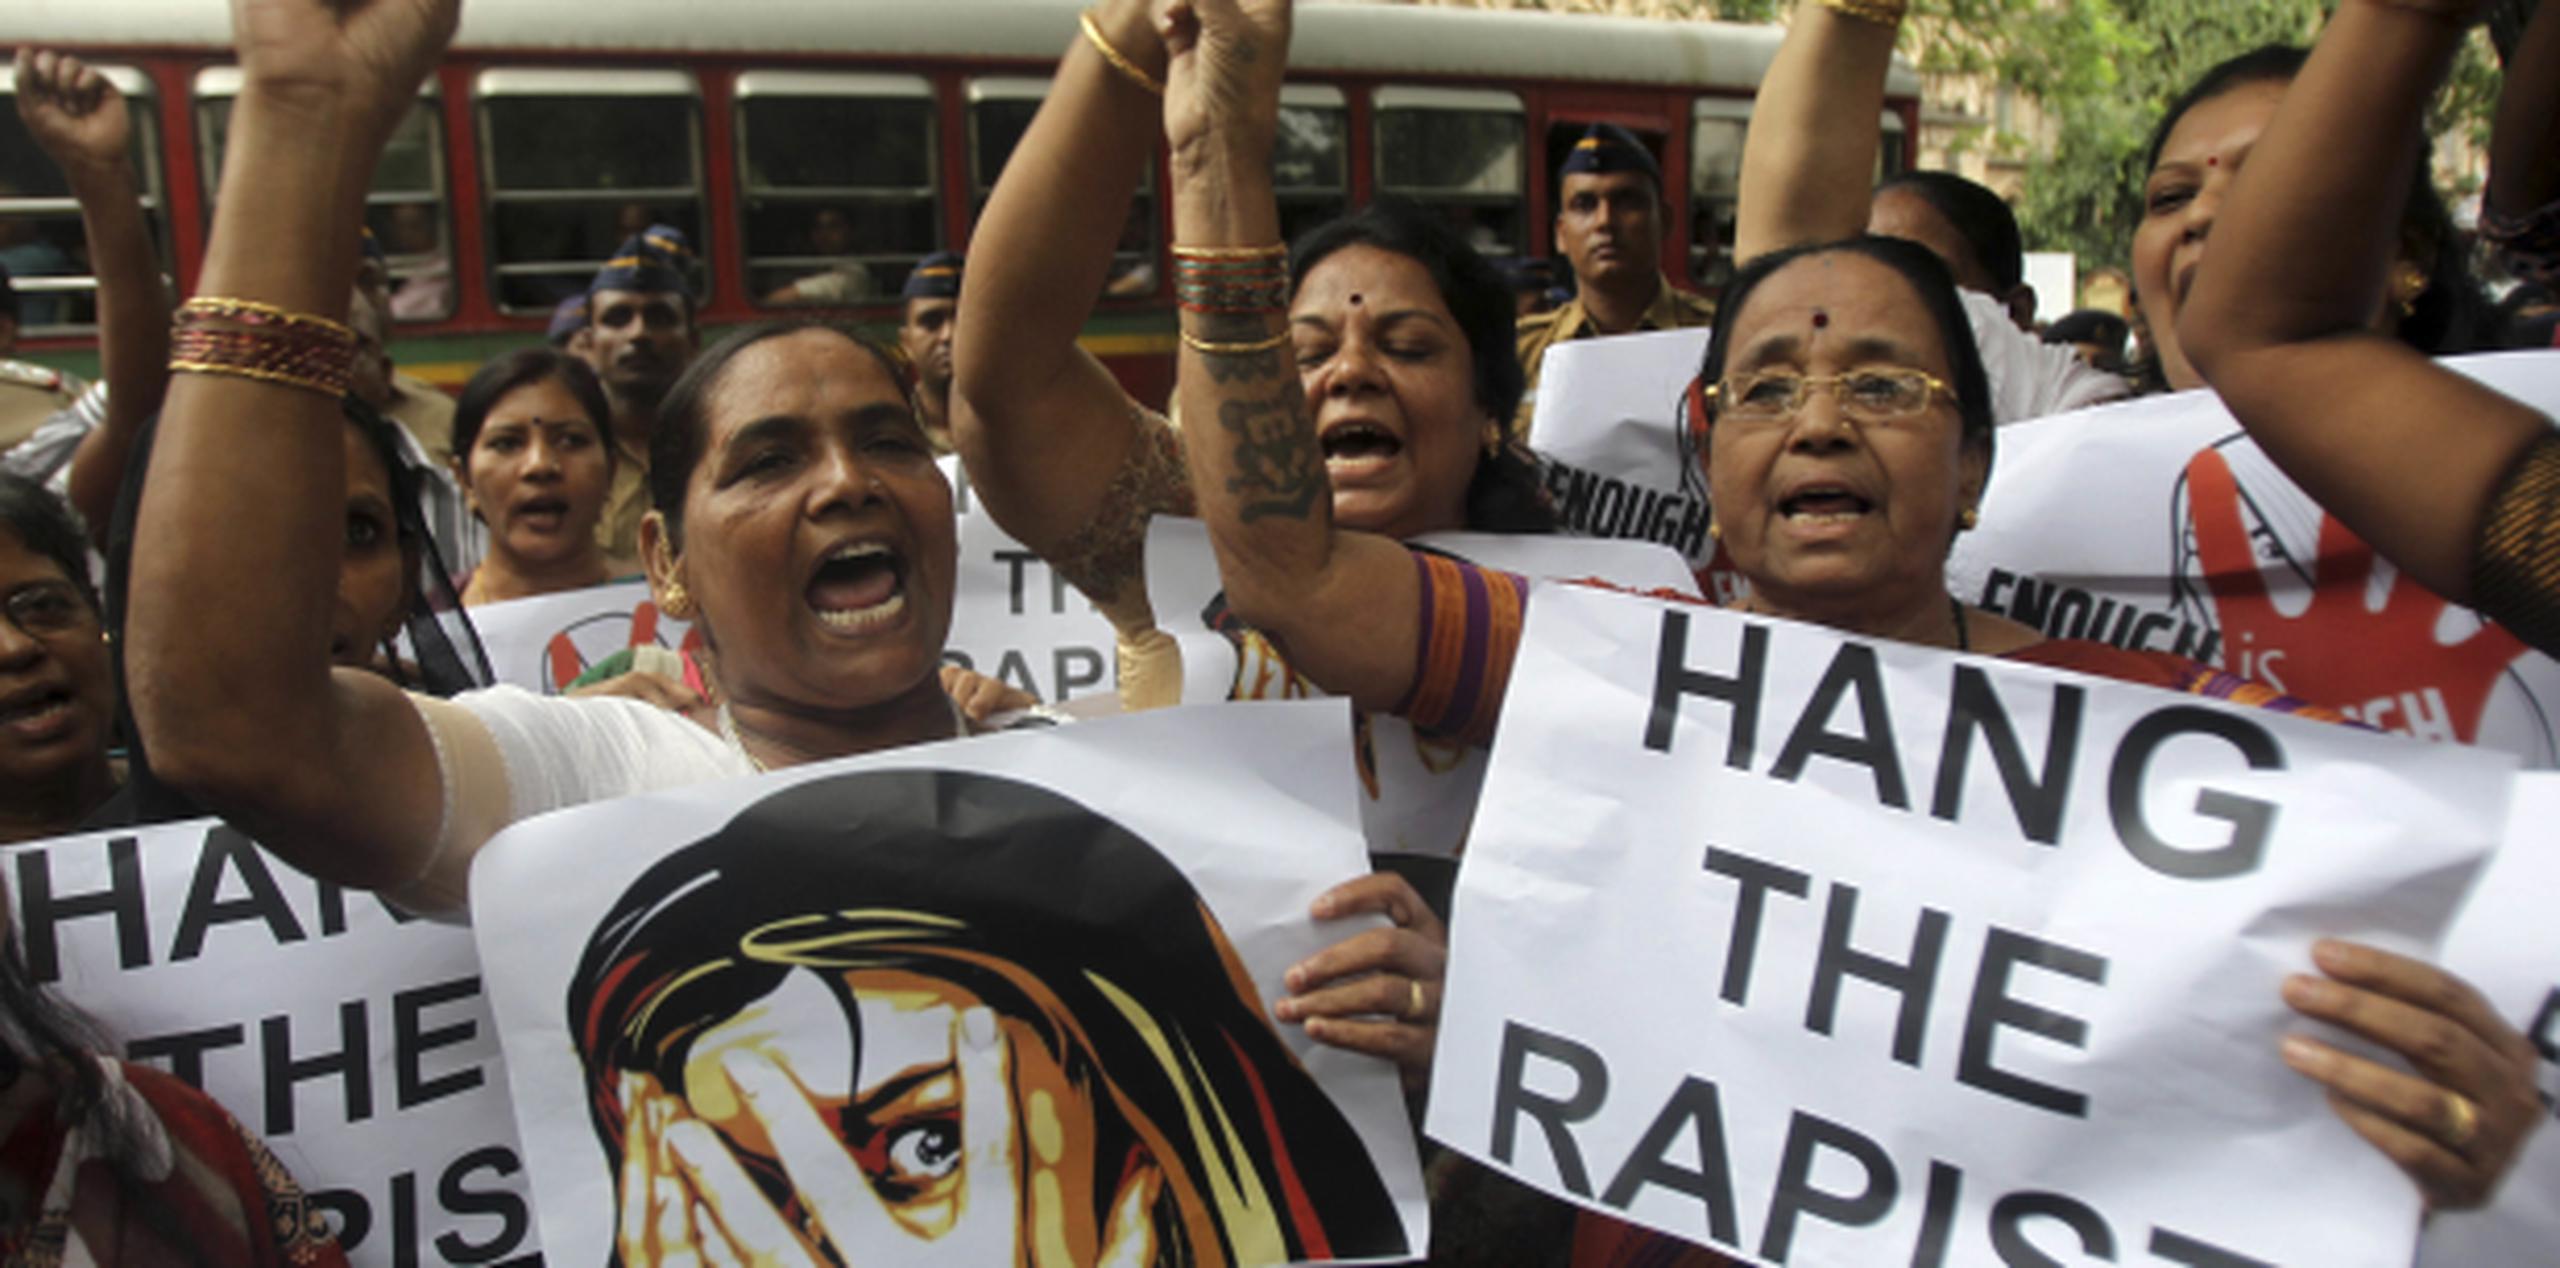 El caso de la menor abusada sexualmente en grupo ha desatado la indignación en el país. (AP)